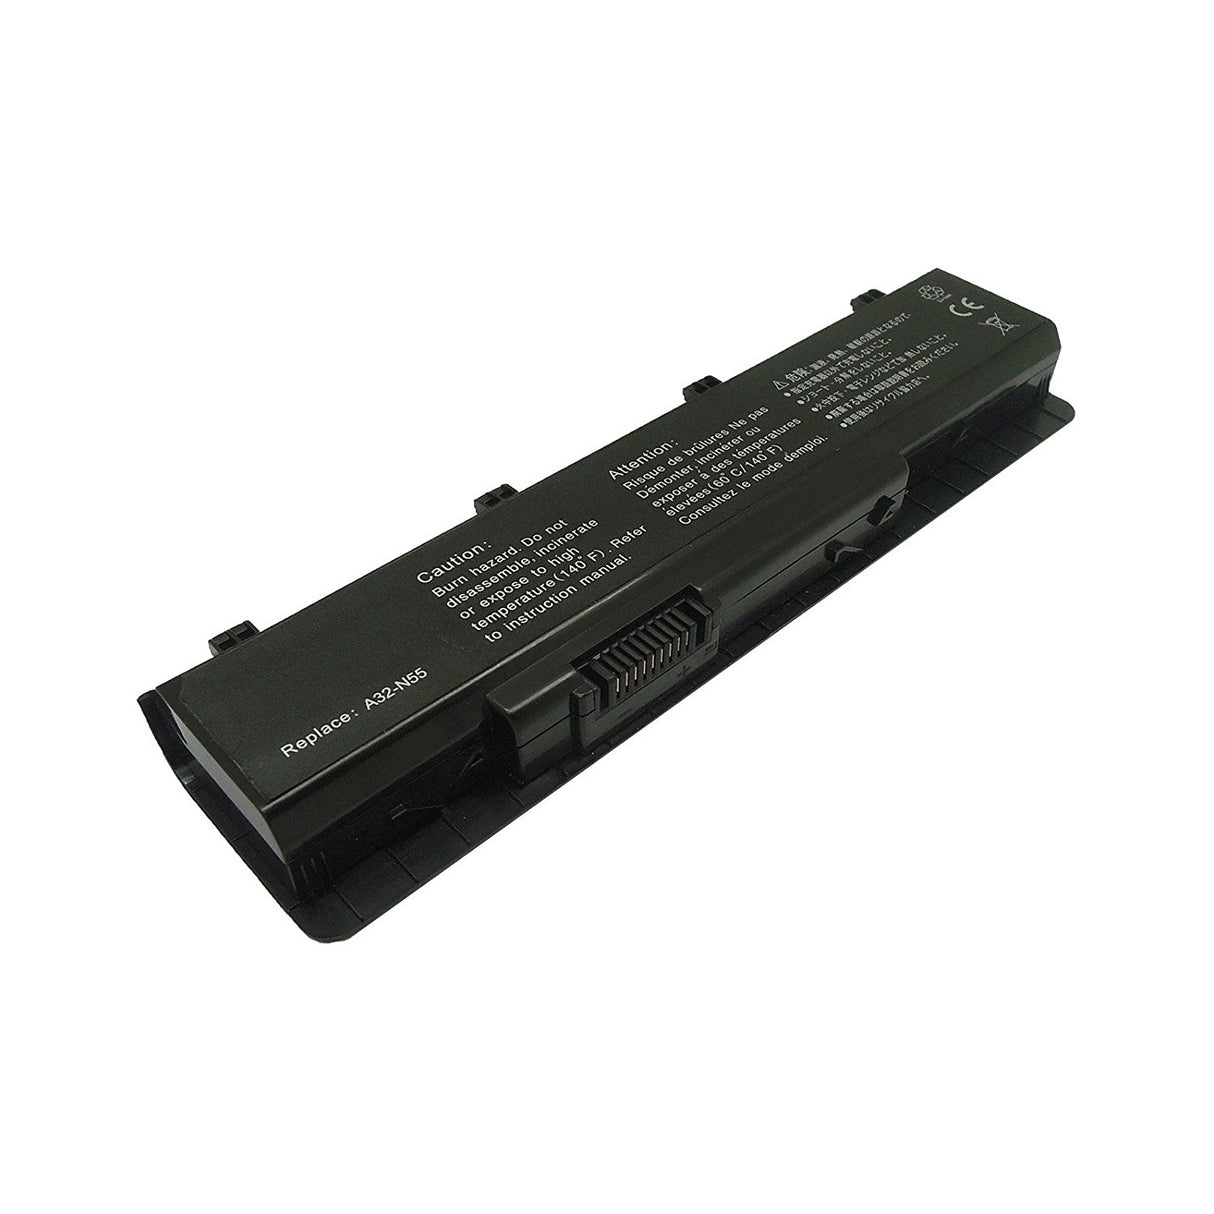 Bateria Compatível para Asus A32-N55 N45 N75 Series 4400mAh - Multi4you®